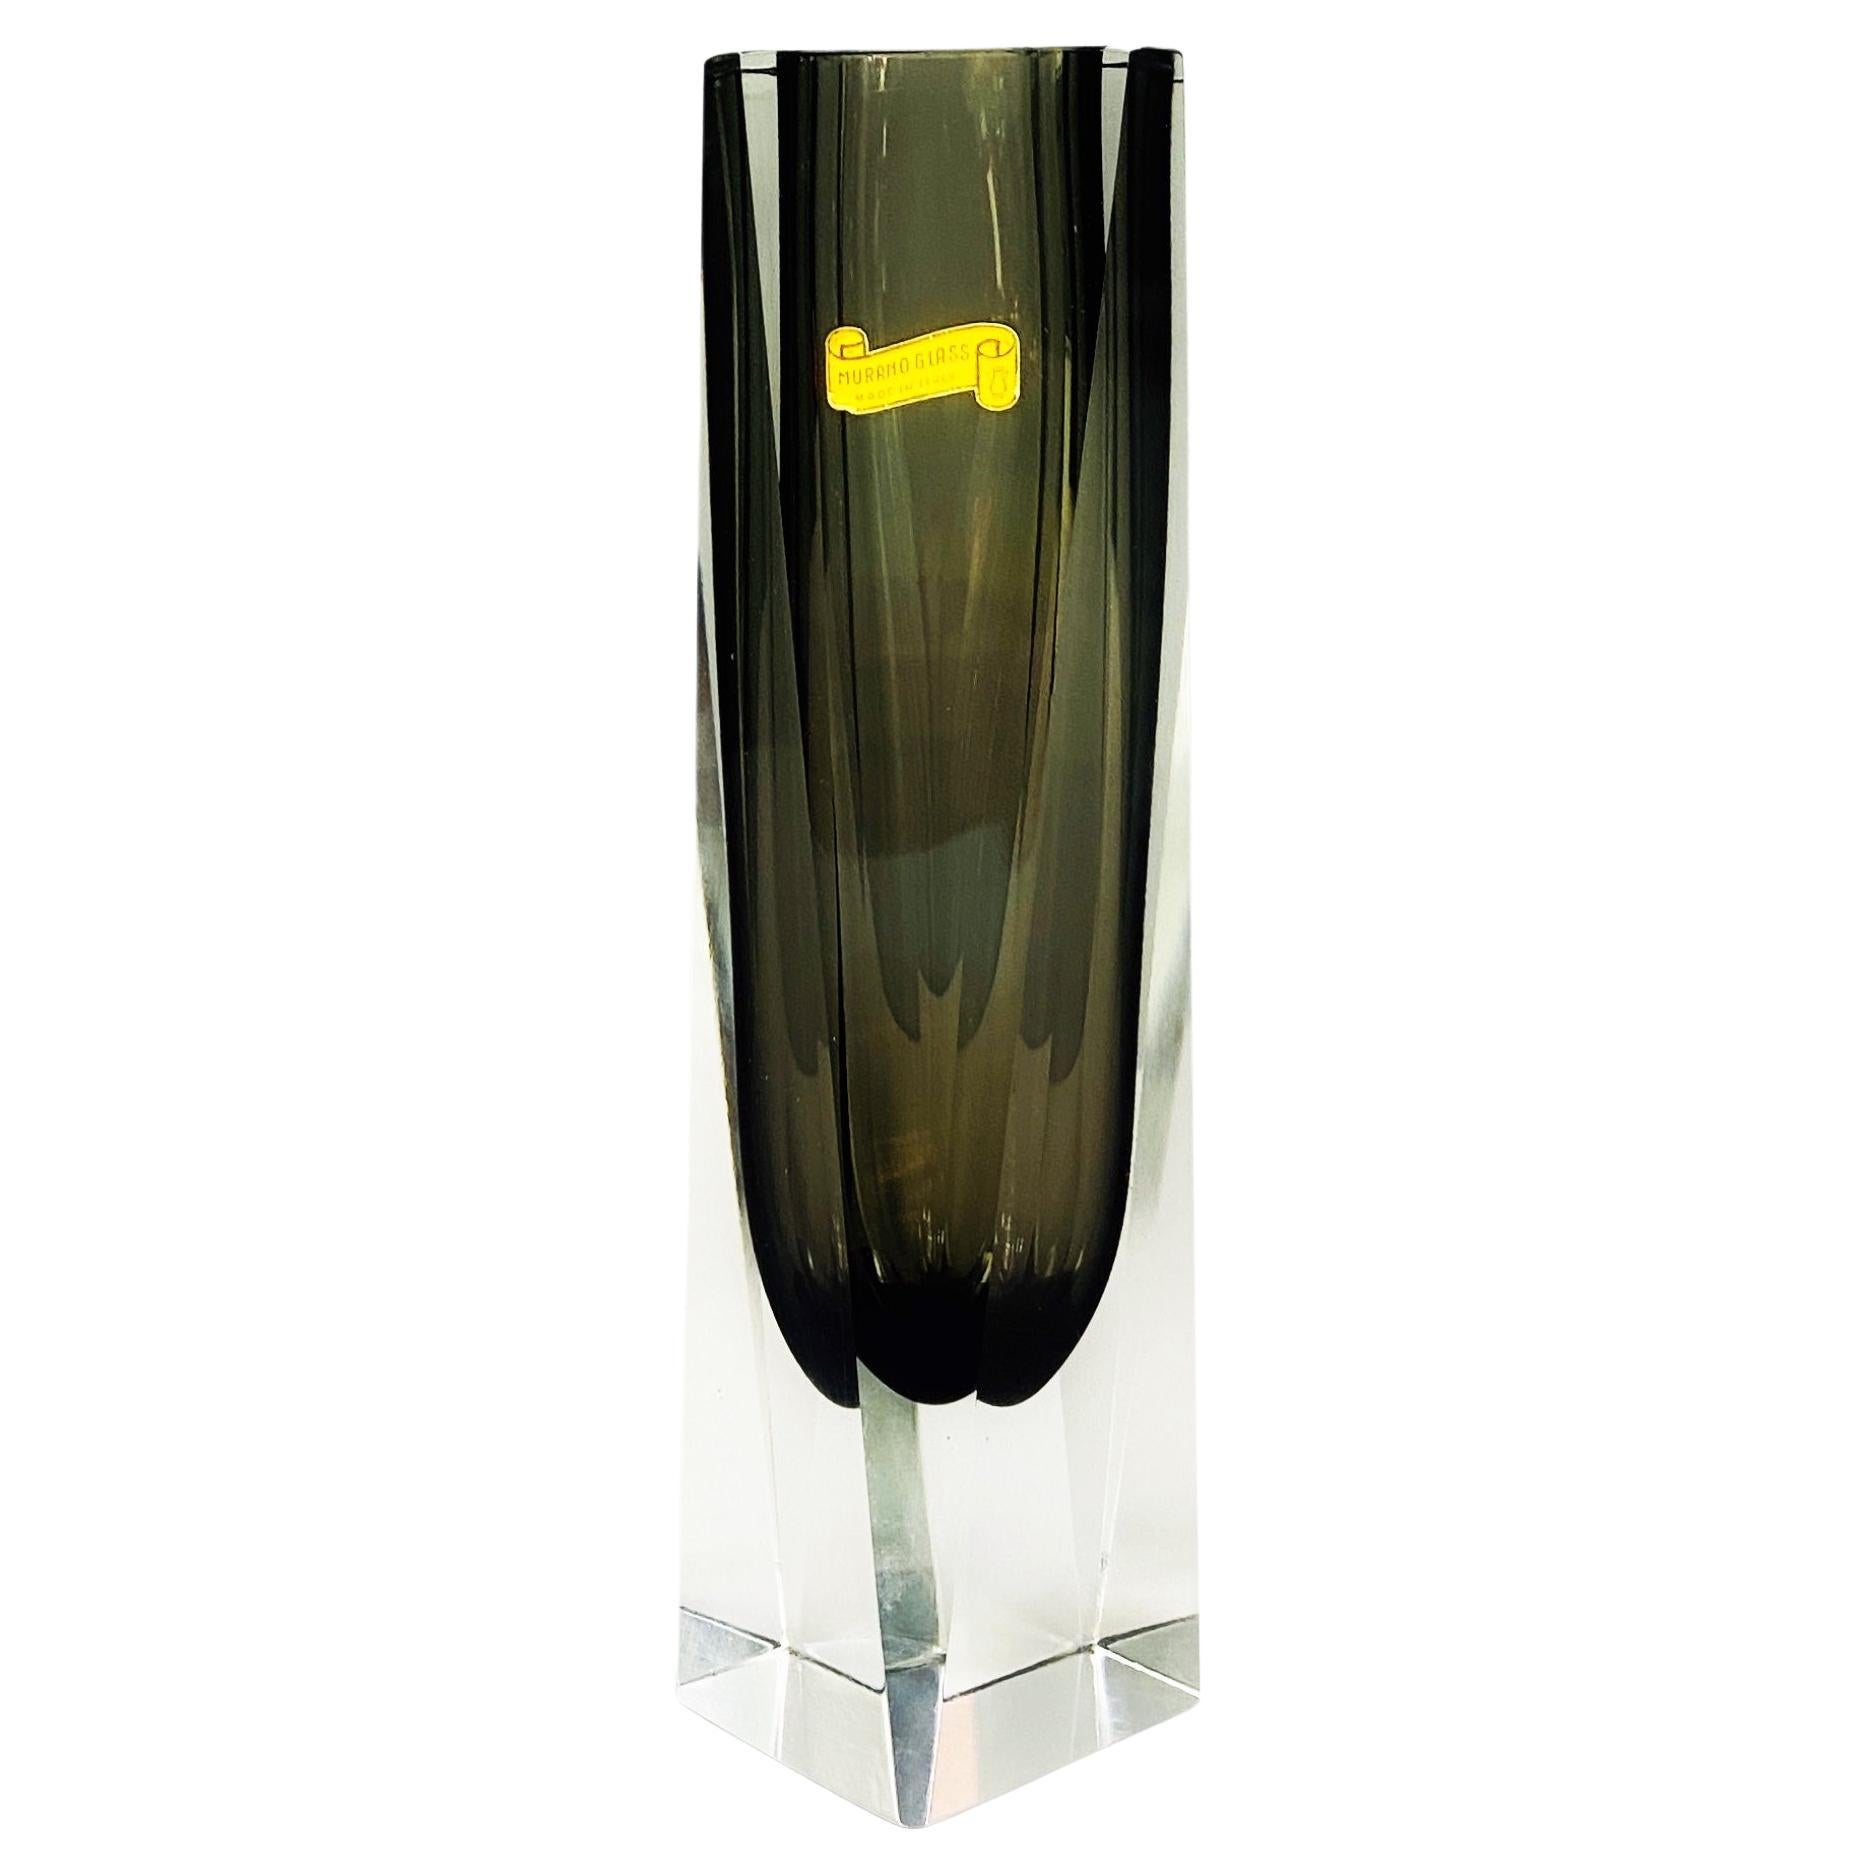 Italienische moderne Vase aus grauem Muranoglas mit grünen und trasparenten Schattierungen, 1970er Jahre
Glasvase aus Murano Italien aus der Serie I Sommersi.

1960er Jahre

Dies ist Teil der fantastischen Serie von Murano-Glas Vase und